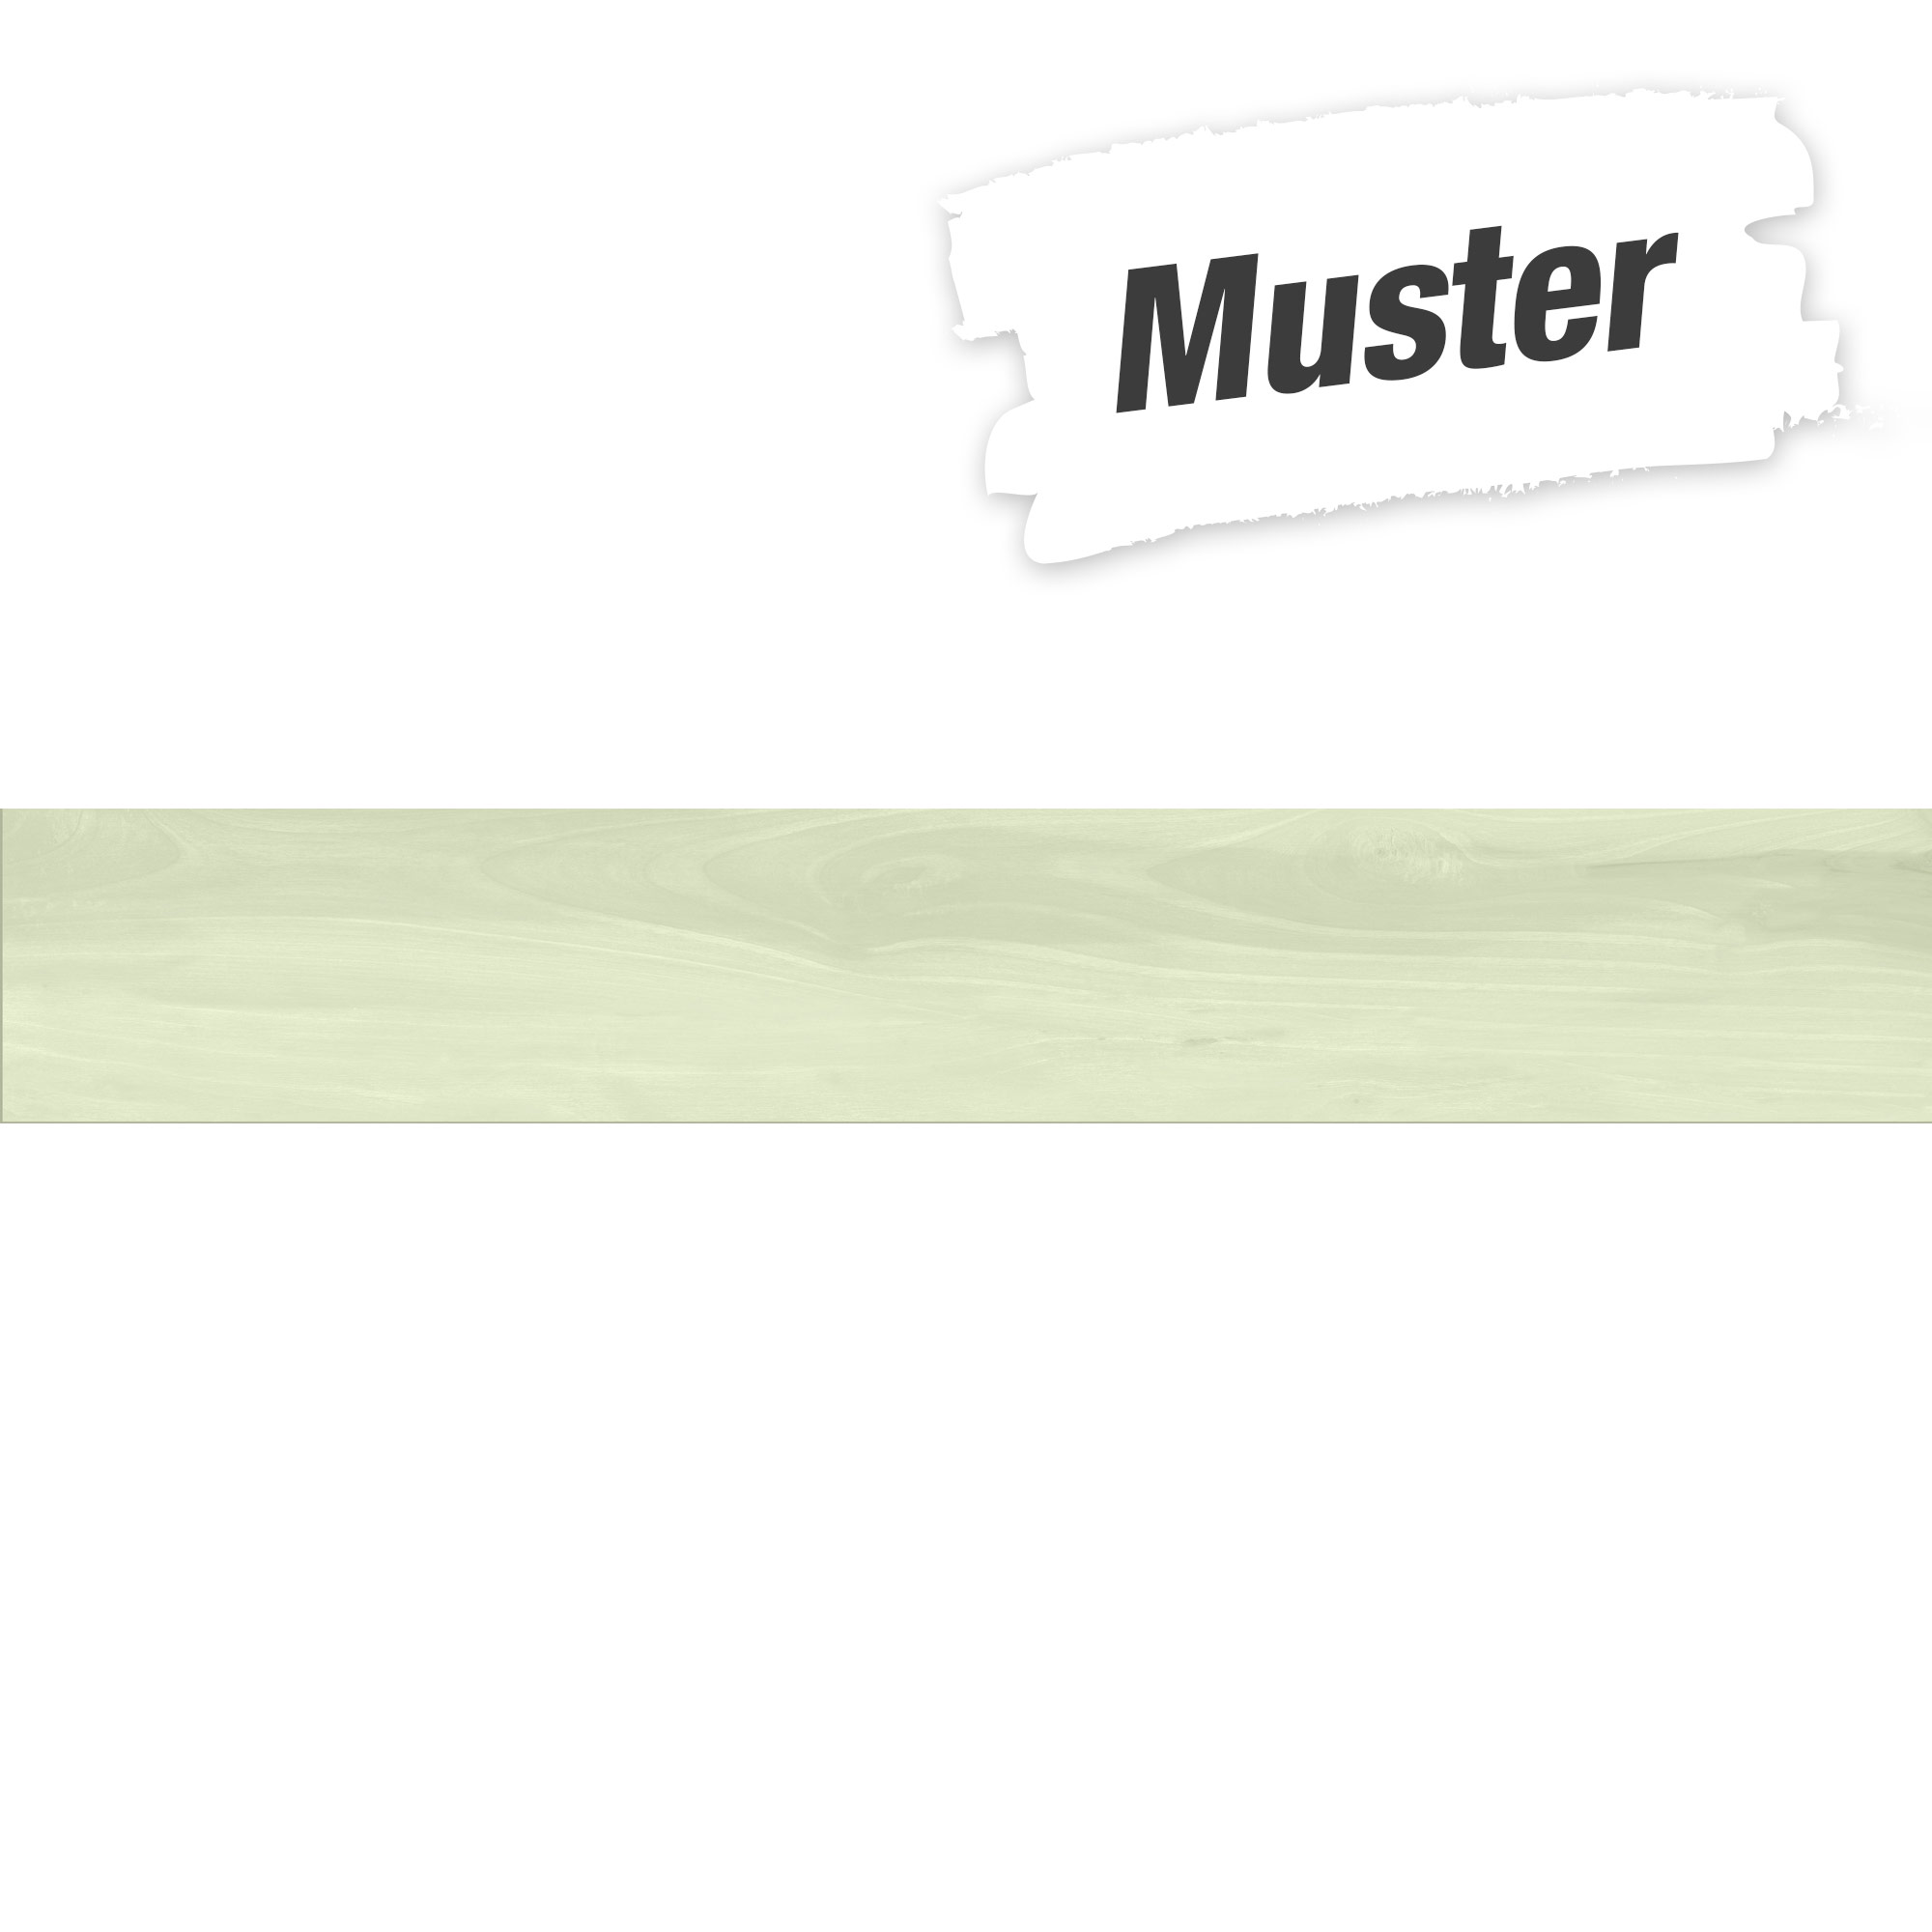 Muster zu Bodenfliese 'Acero' Feinsteinzeug beige 20 x 120 cm + product picture